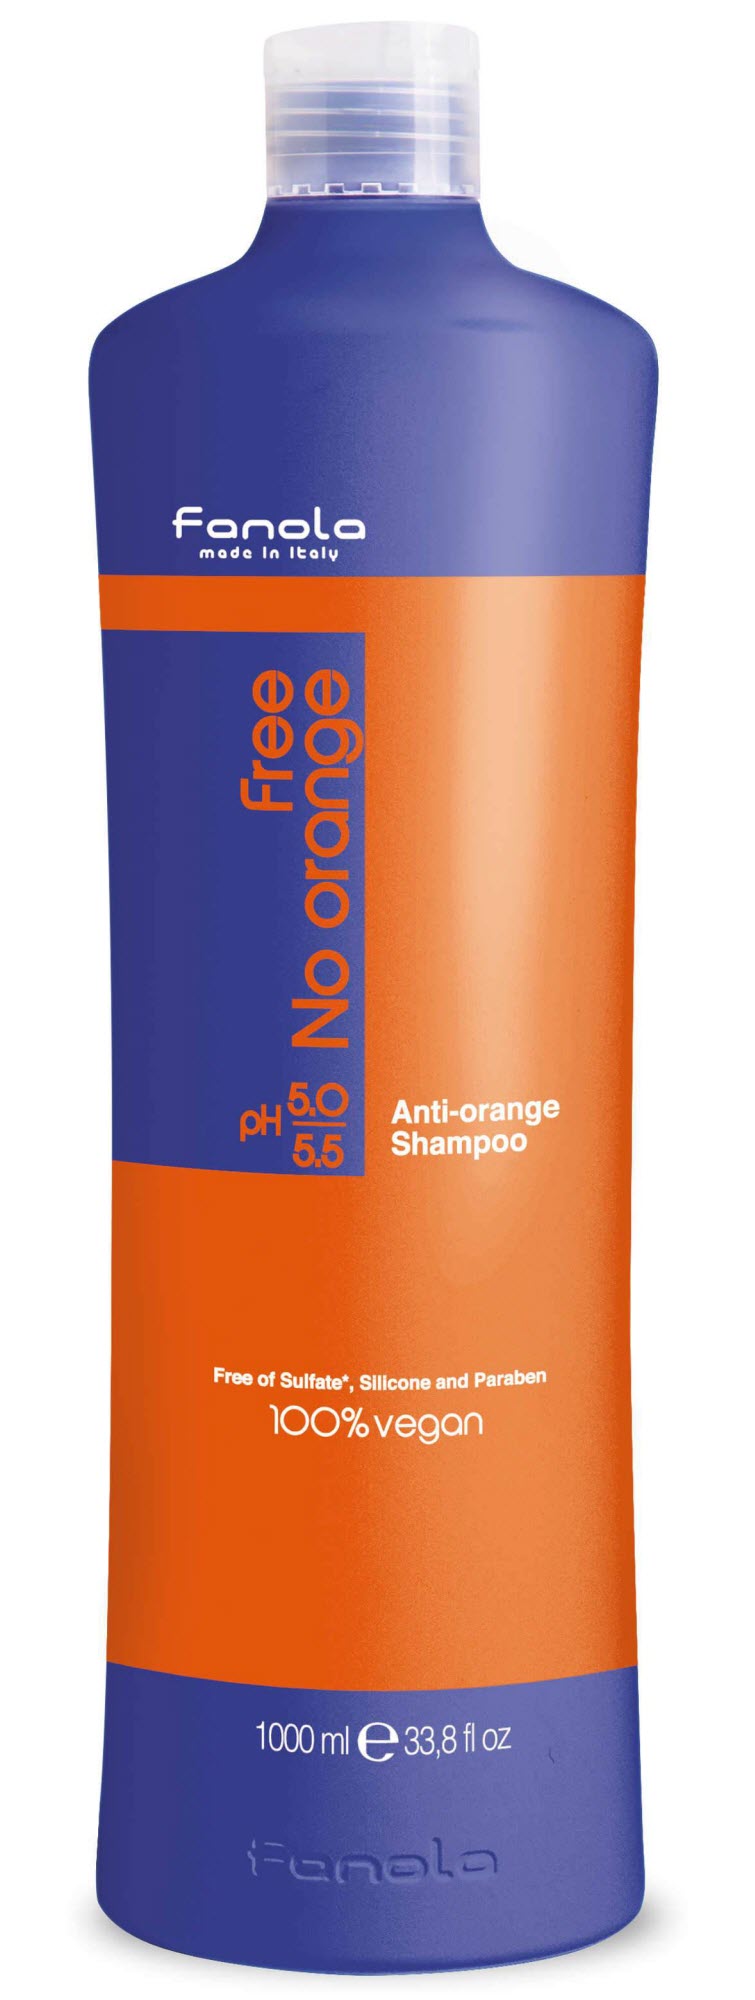 Fanola Free No Orange Vegan Shampoo or Mask